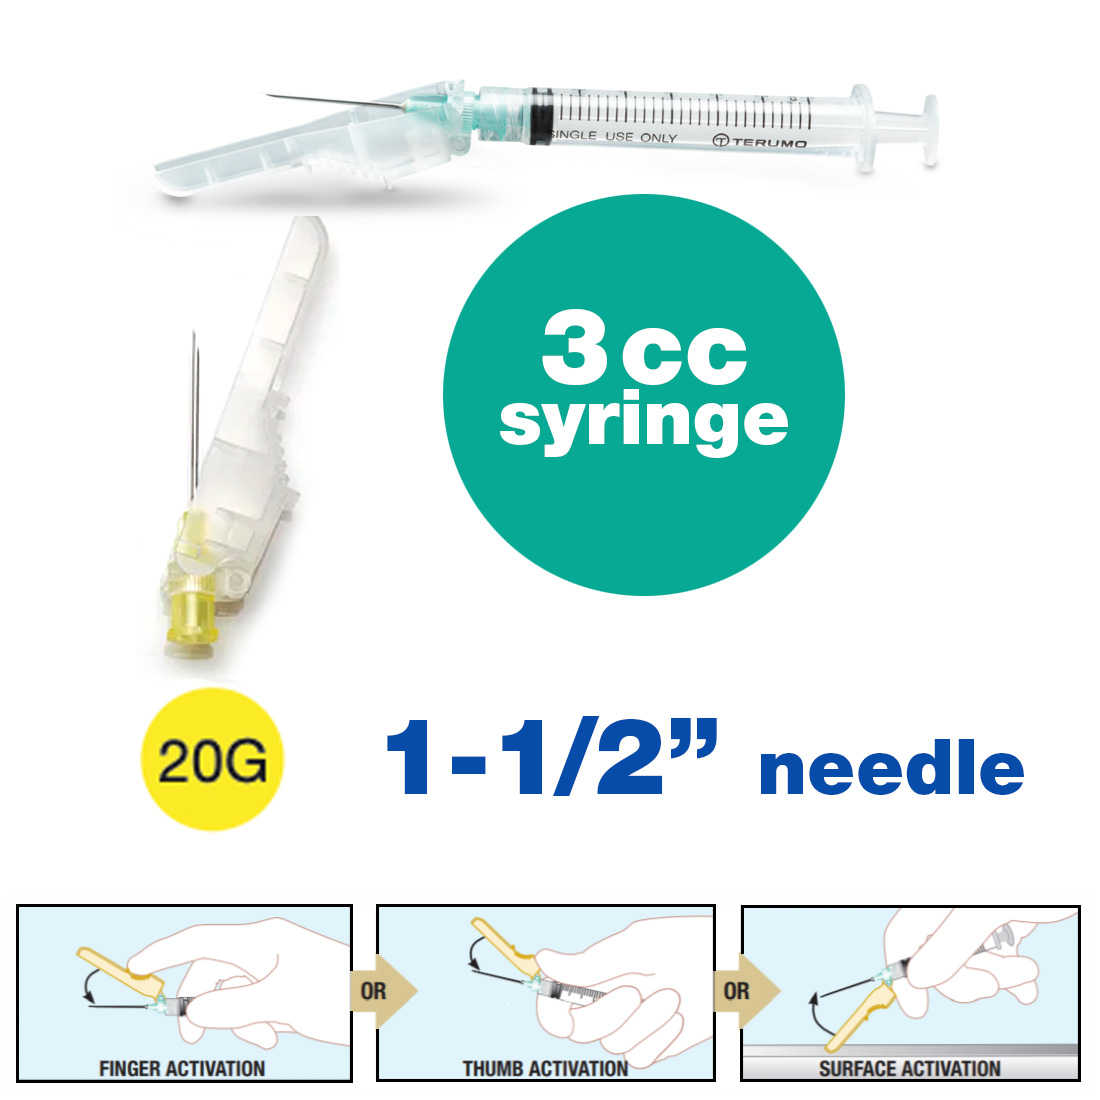 SurGuard® 3 Safety Hypodermic Needle, 3CC Syringe with 20G x 1 1/2" Needle - 100/Box